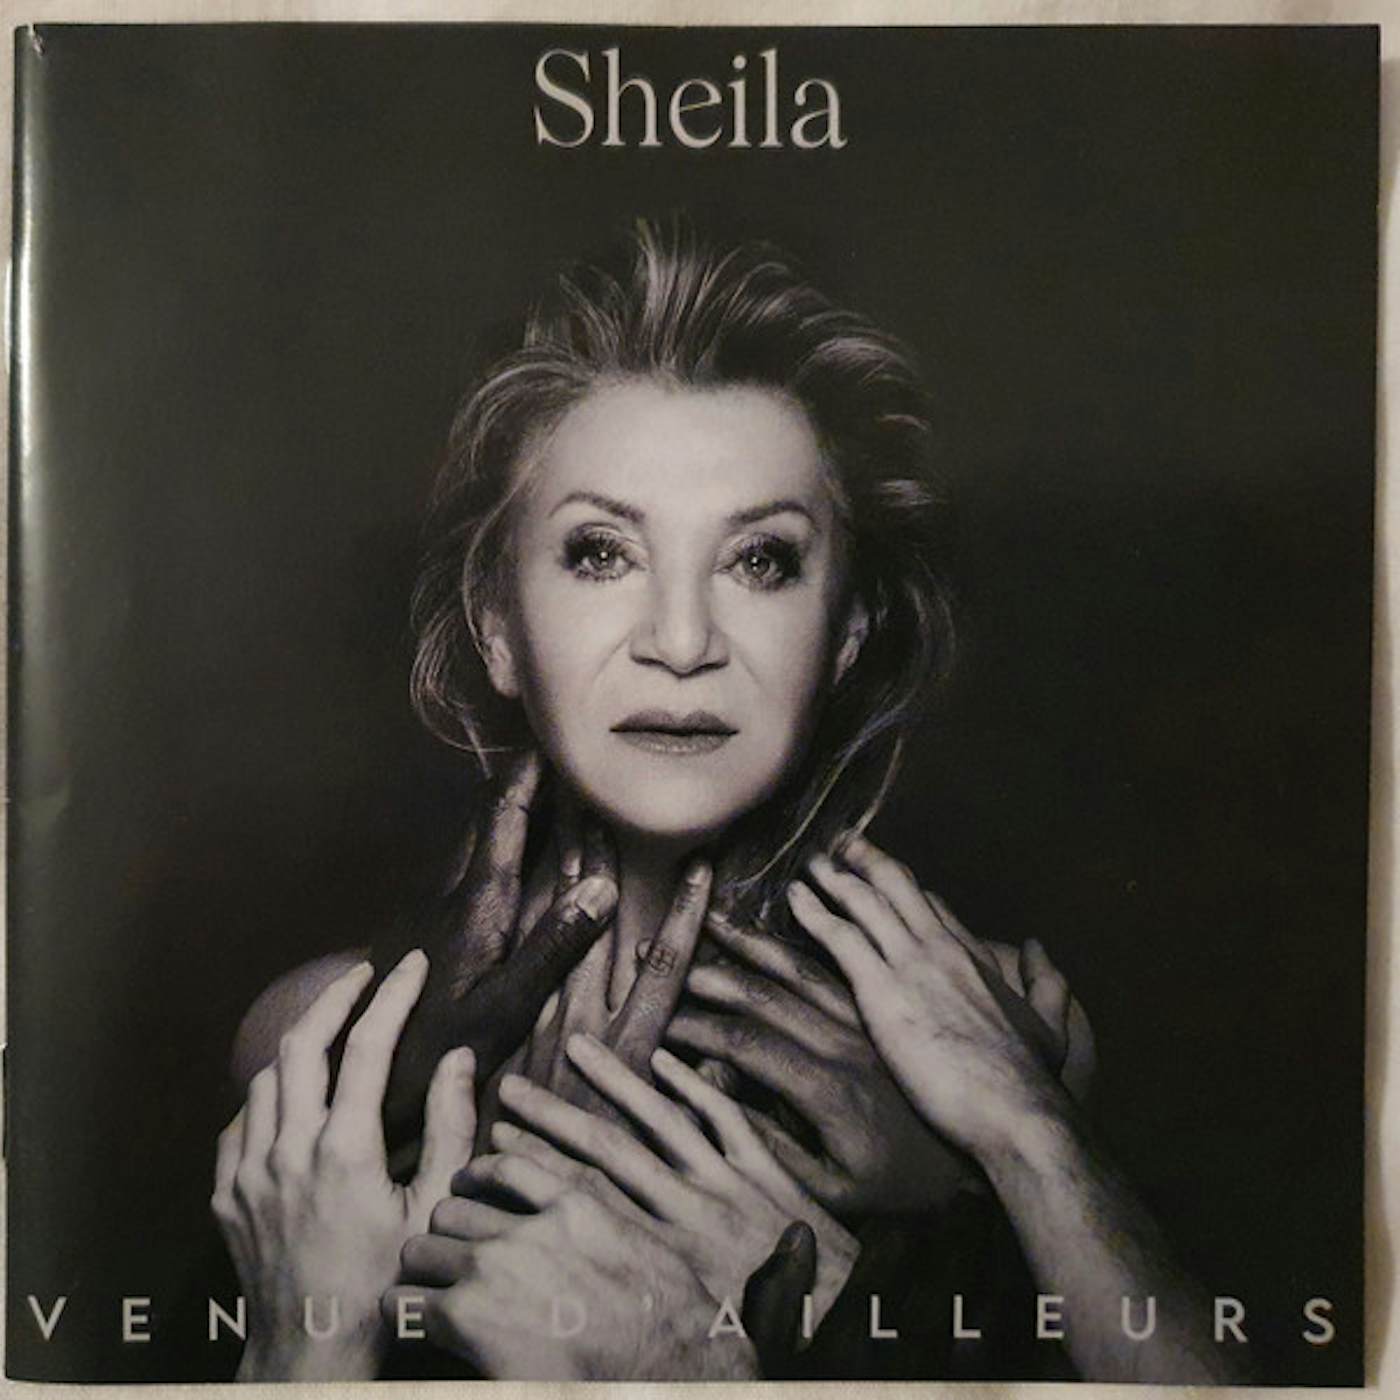 Sheila Venue D'ailleurs Vinyl Record